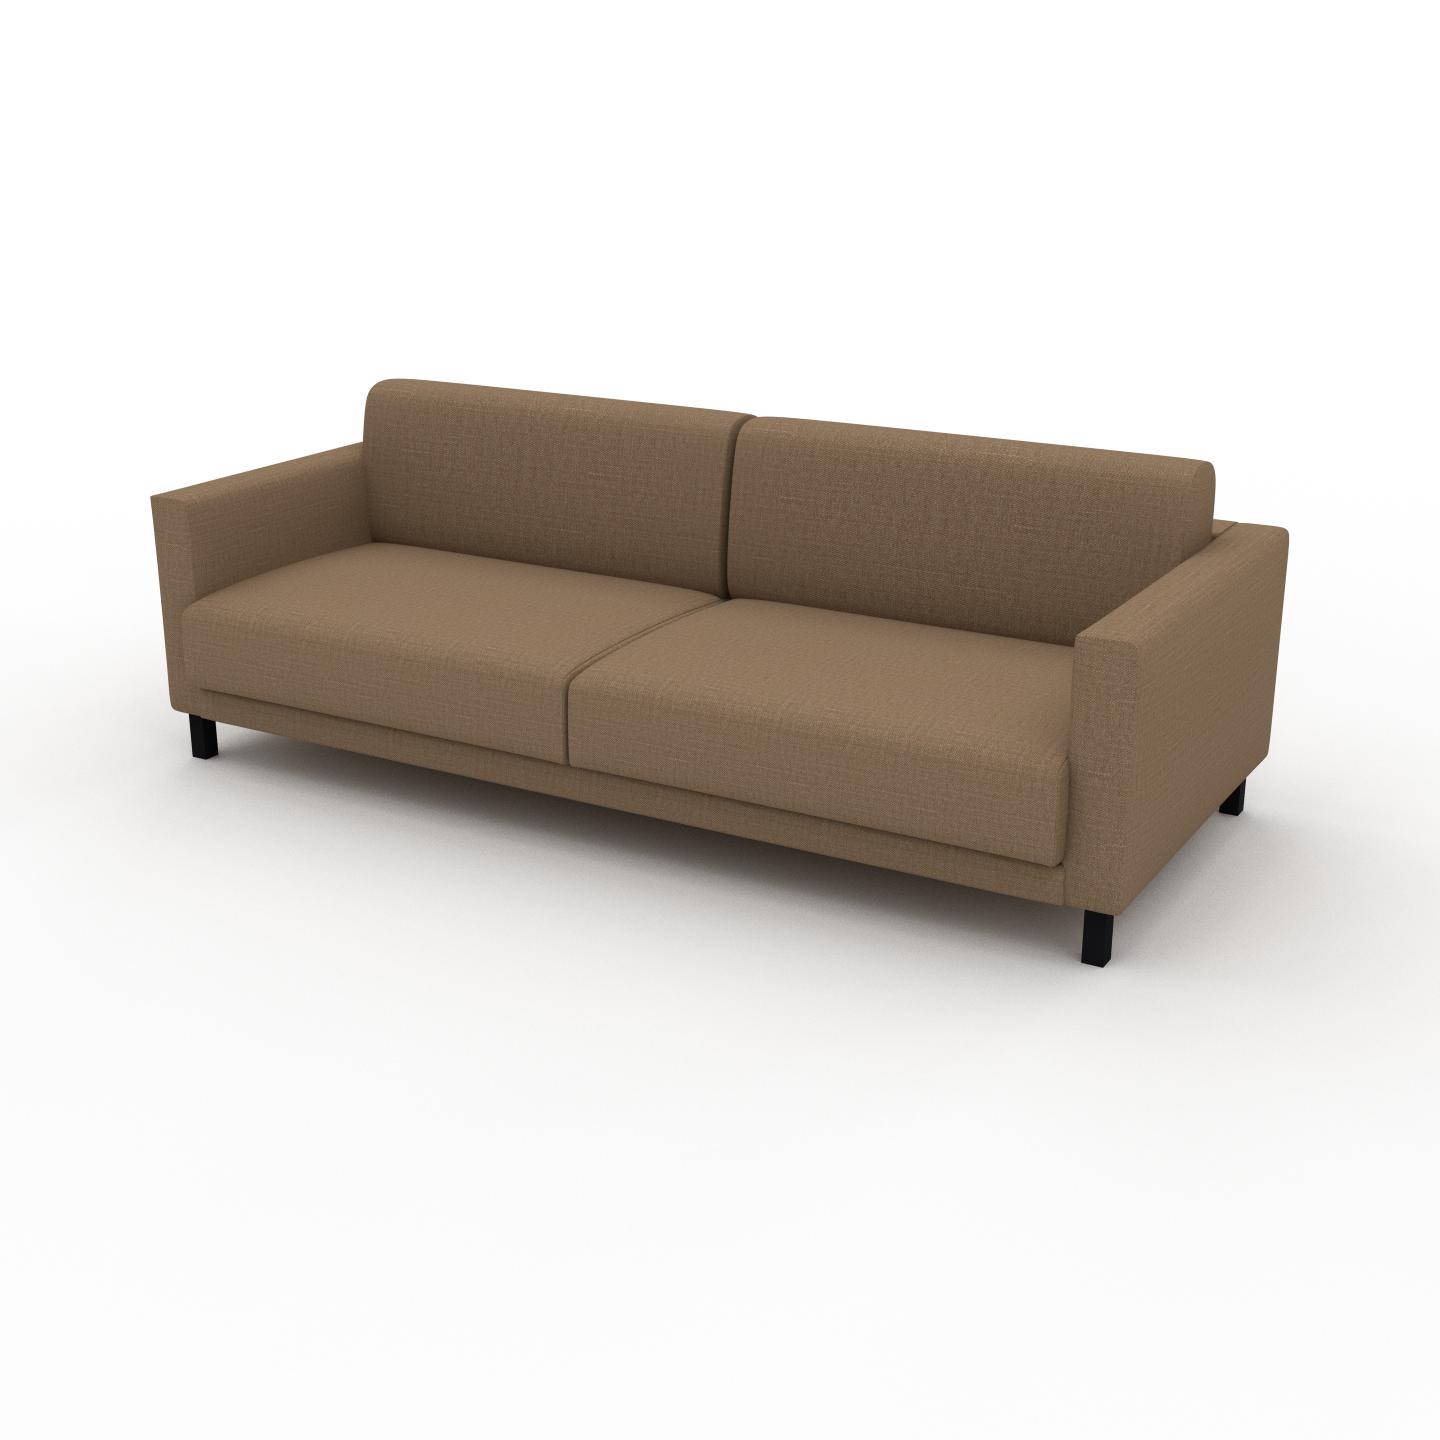 MYCS Sofa Karamell­braun - Moderne Designer-Couch: Hochwertige Qualität, einzigartiges Design - 224 x 75 x 98 cm, Komplett anpassbar